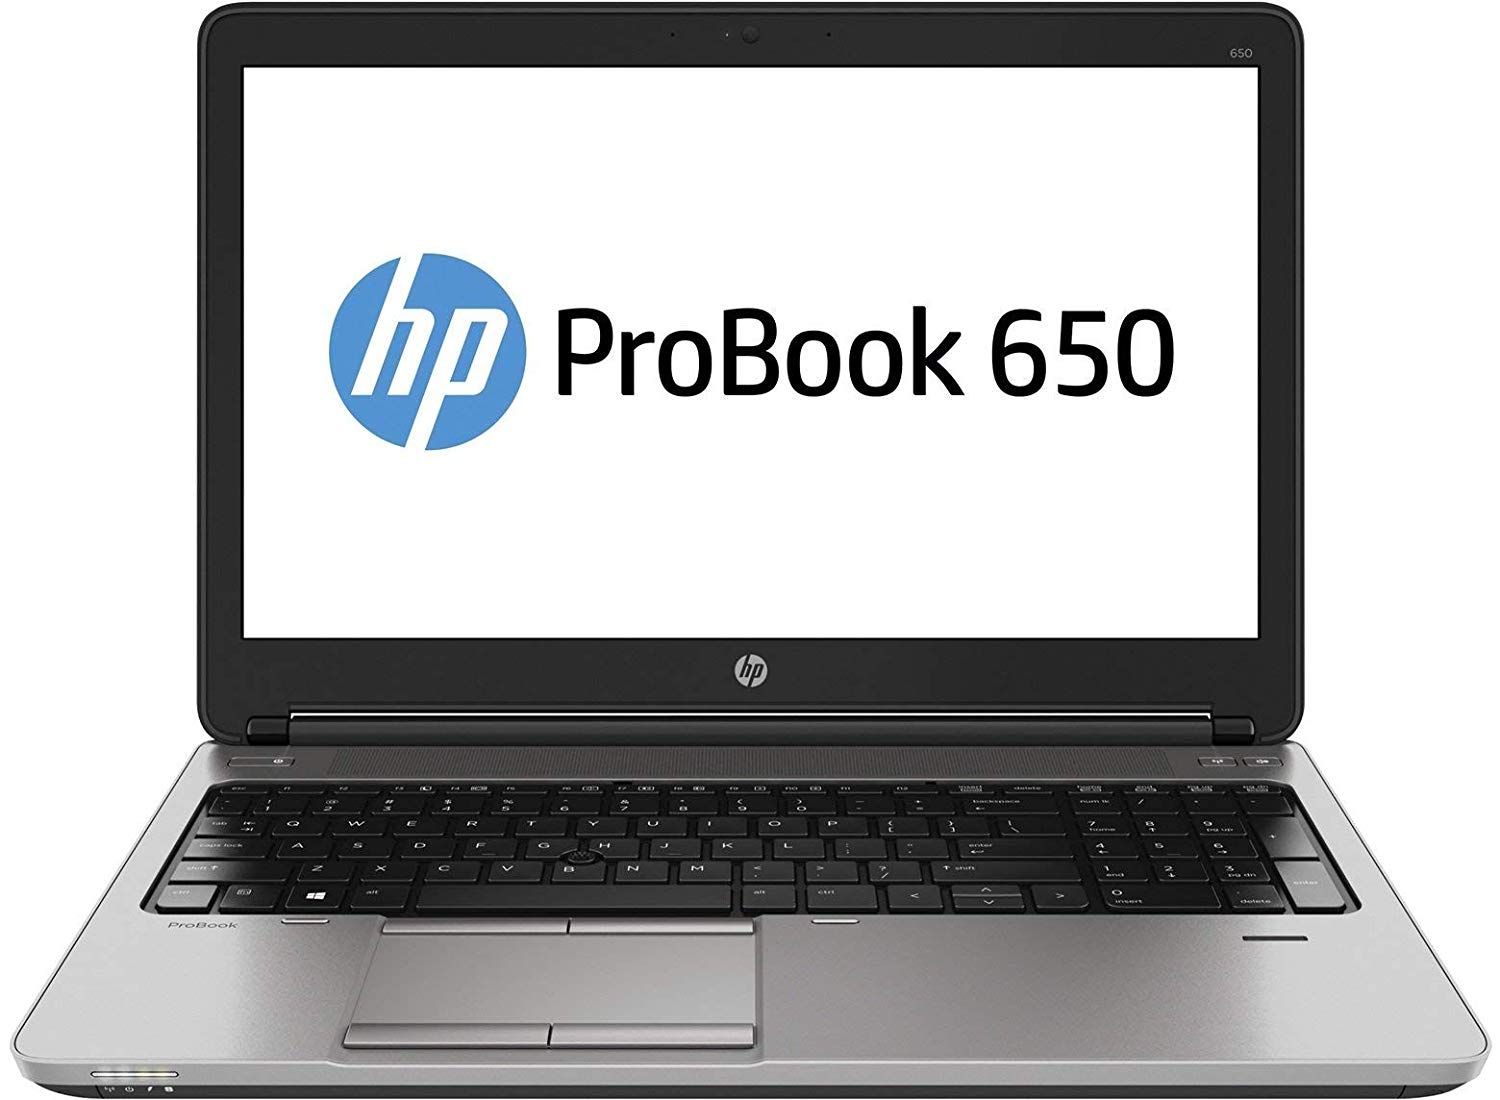 Ноутбук HP ProBook 650 G2 i5-6300U/8/120SSD Refurb